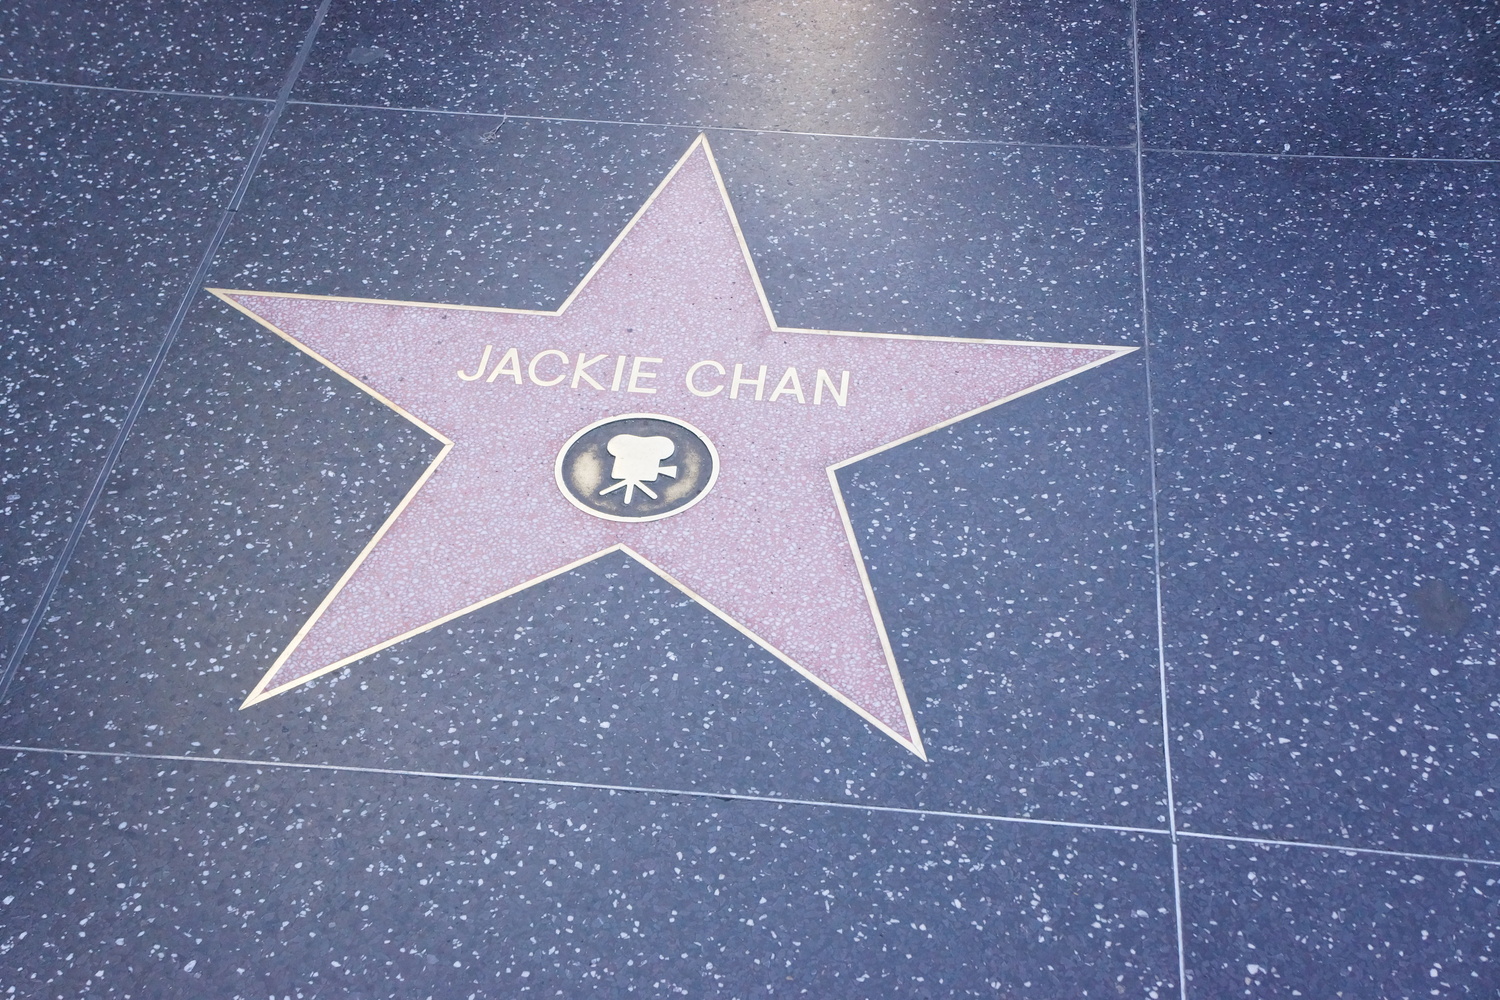 好莱坞星光大道上的 Jackie Chen